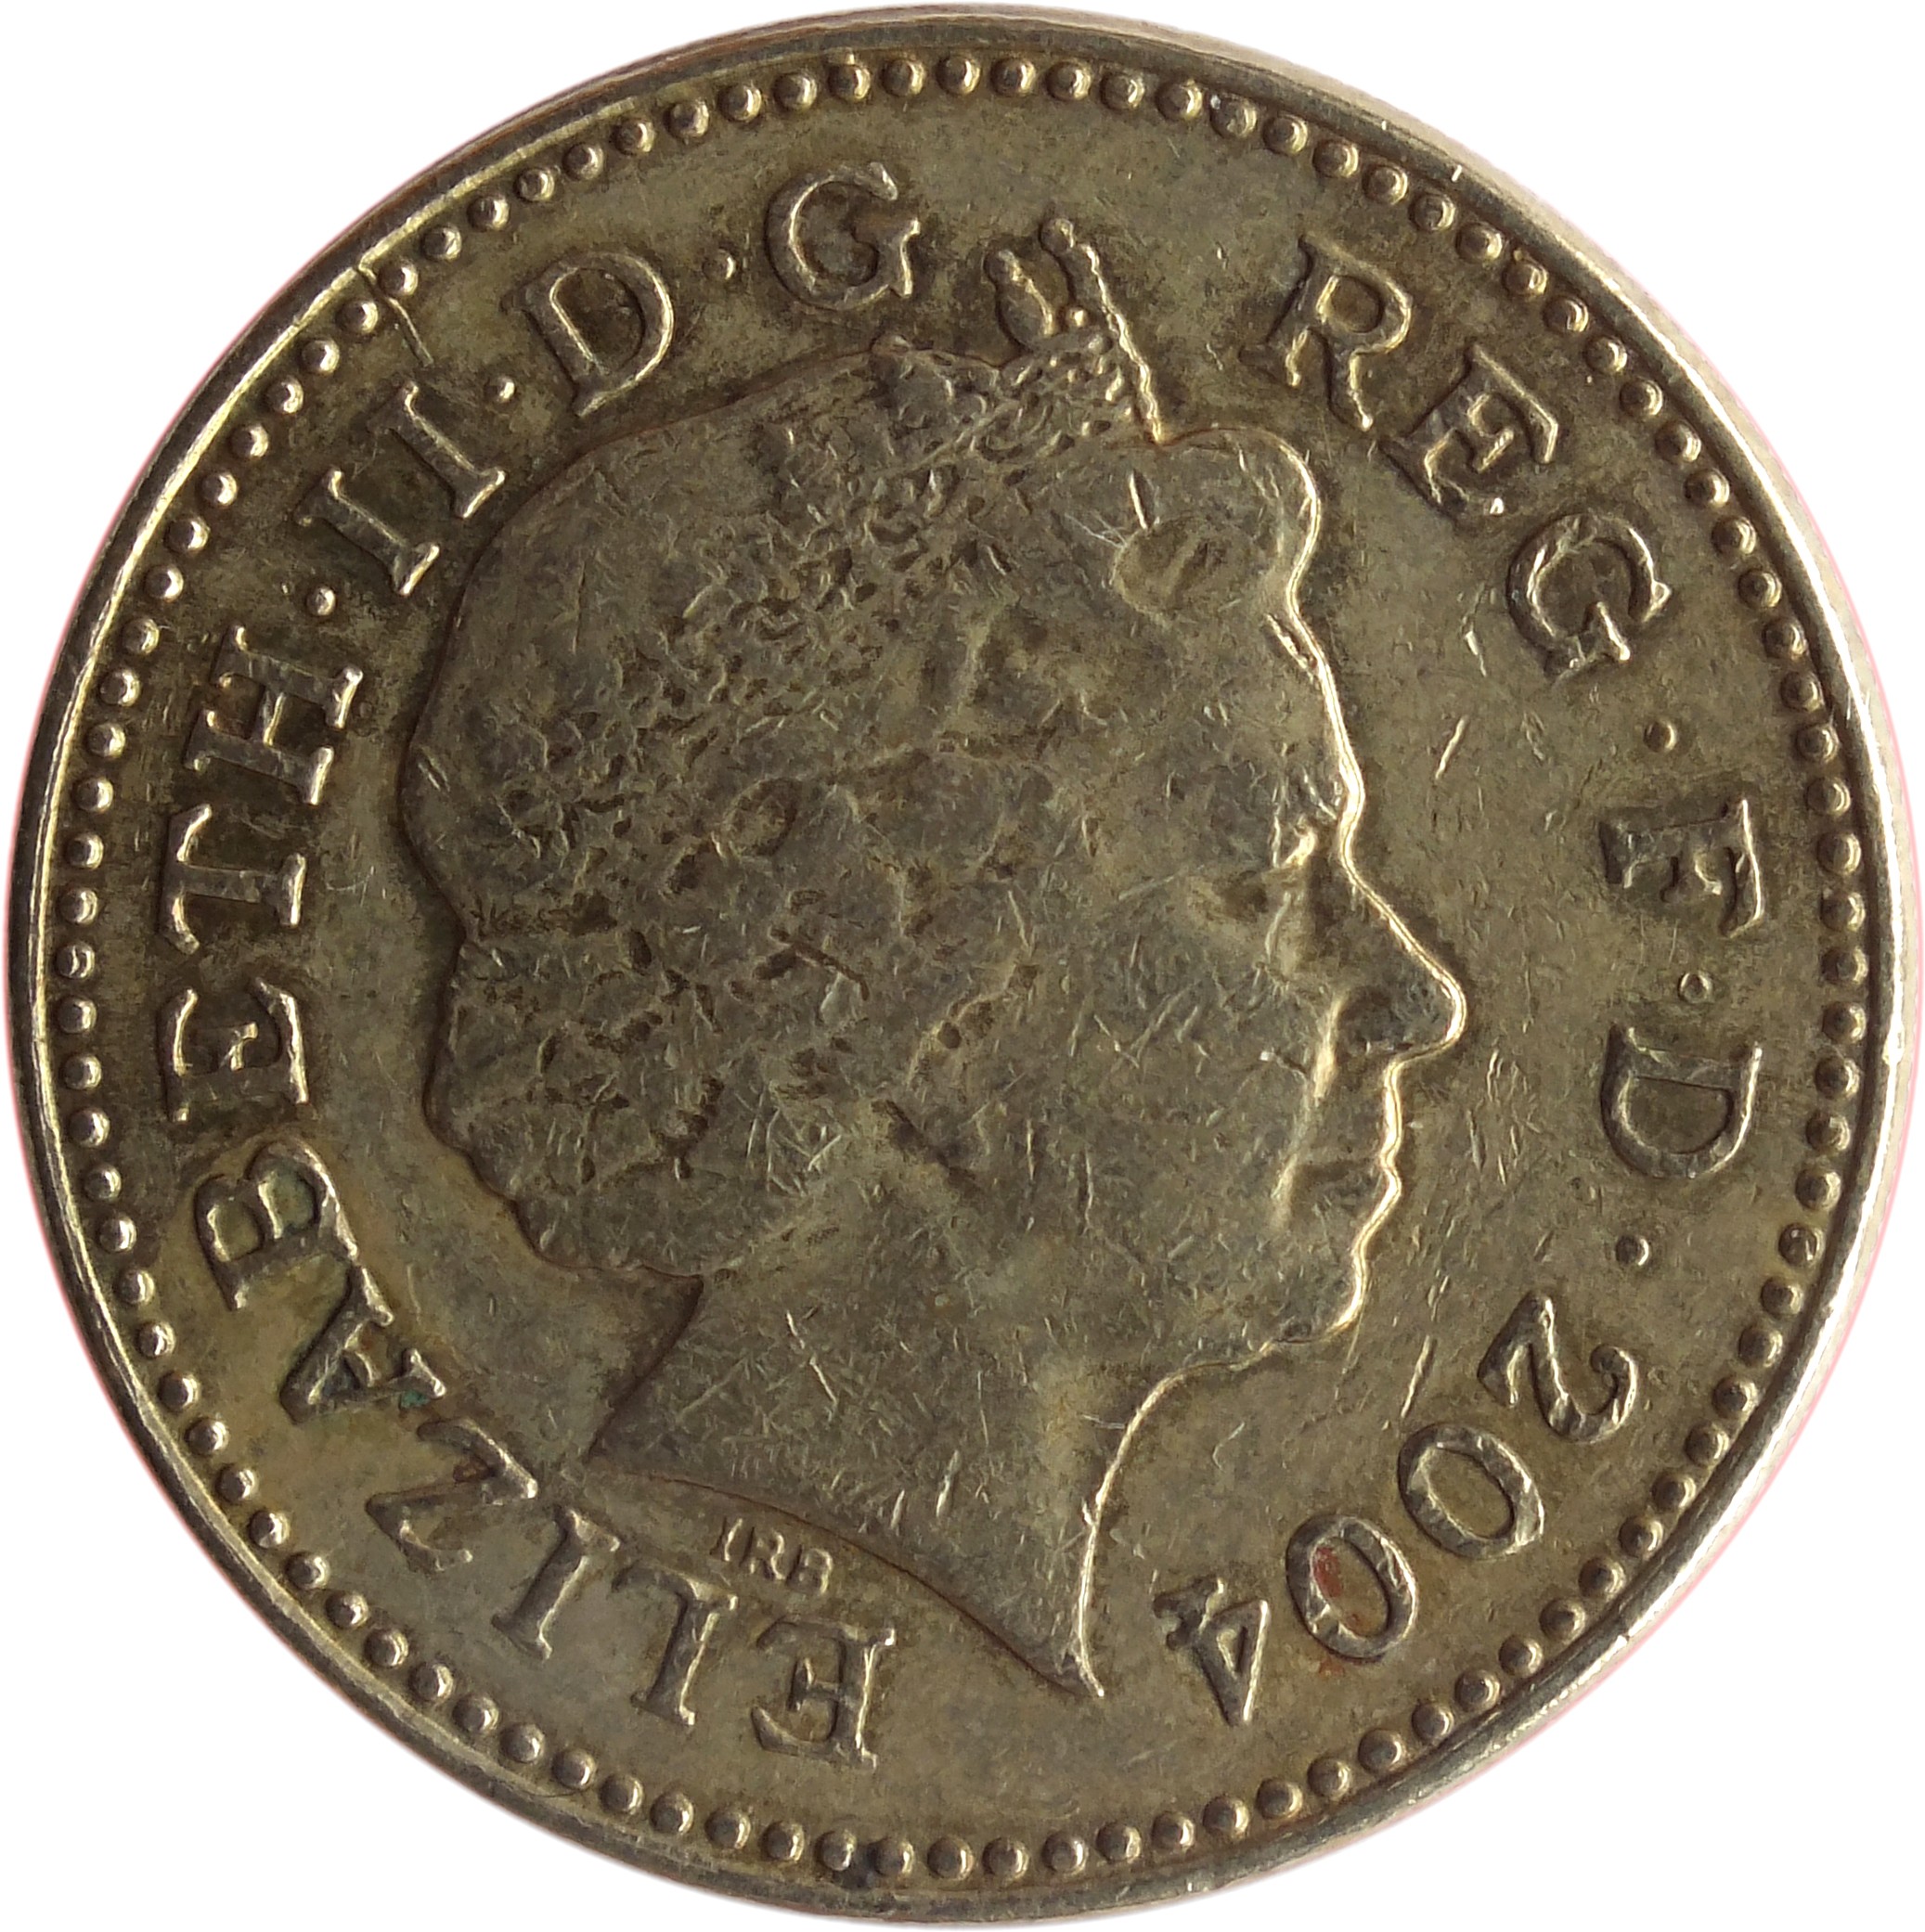 First coins. Elizabeth II D G reg f d 2004 2. Монета Elizabeth 2 d.g reg .f.d 2007. Elizabeth 2 монета 2003.